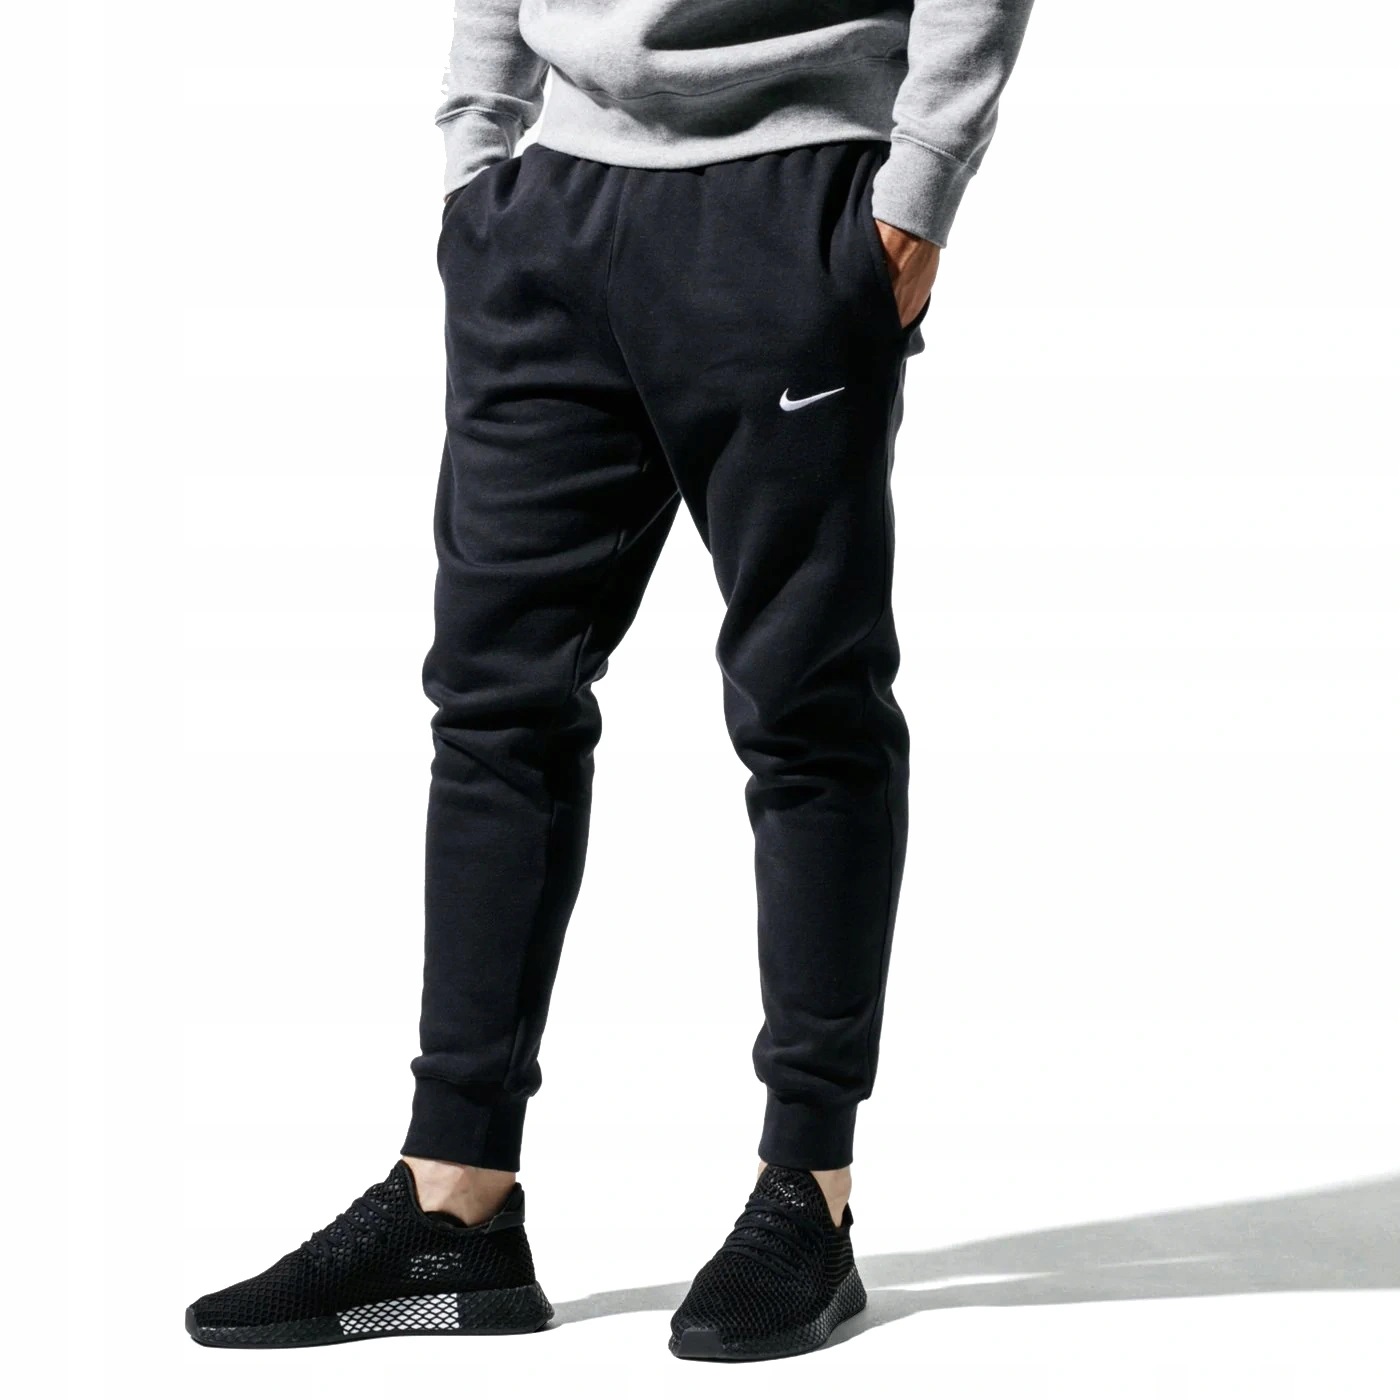 Spodnie Nike Bawełniane jogger dresy MĘSKIE rS-XXL - Allegro.pl